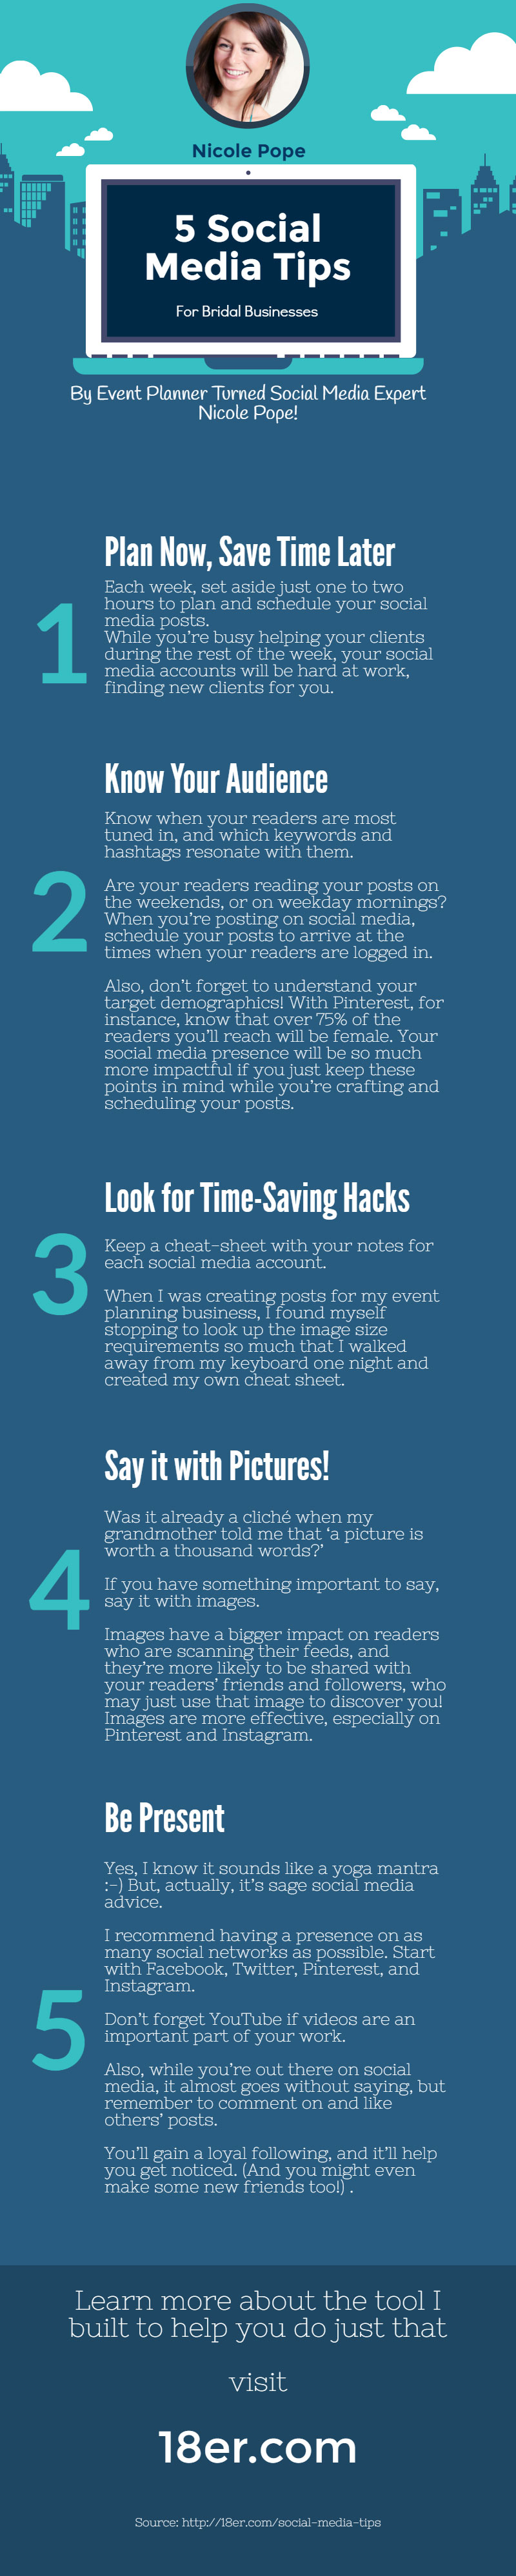 Social Media Tips for Bridal Businesses. Tips for Facebook, Twitter, Pinterest, LinkedIn and Instagram